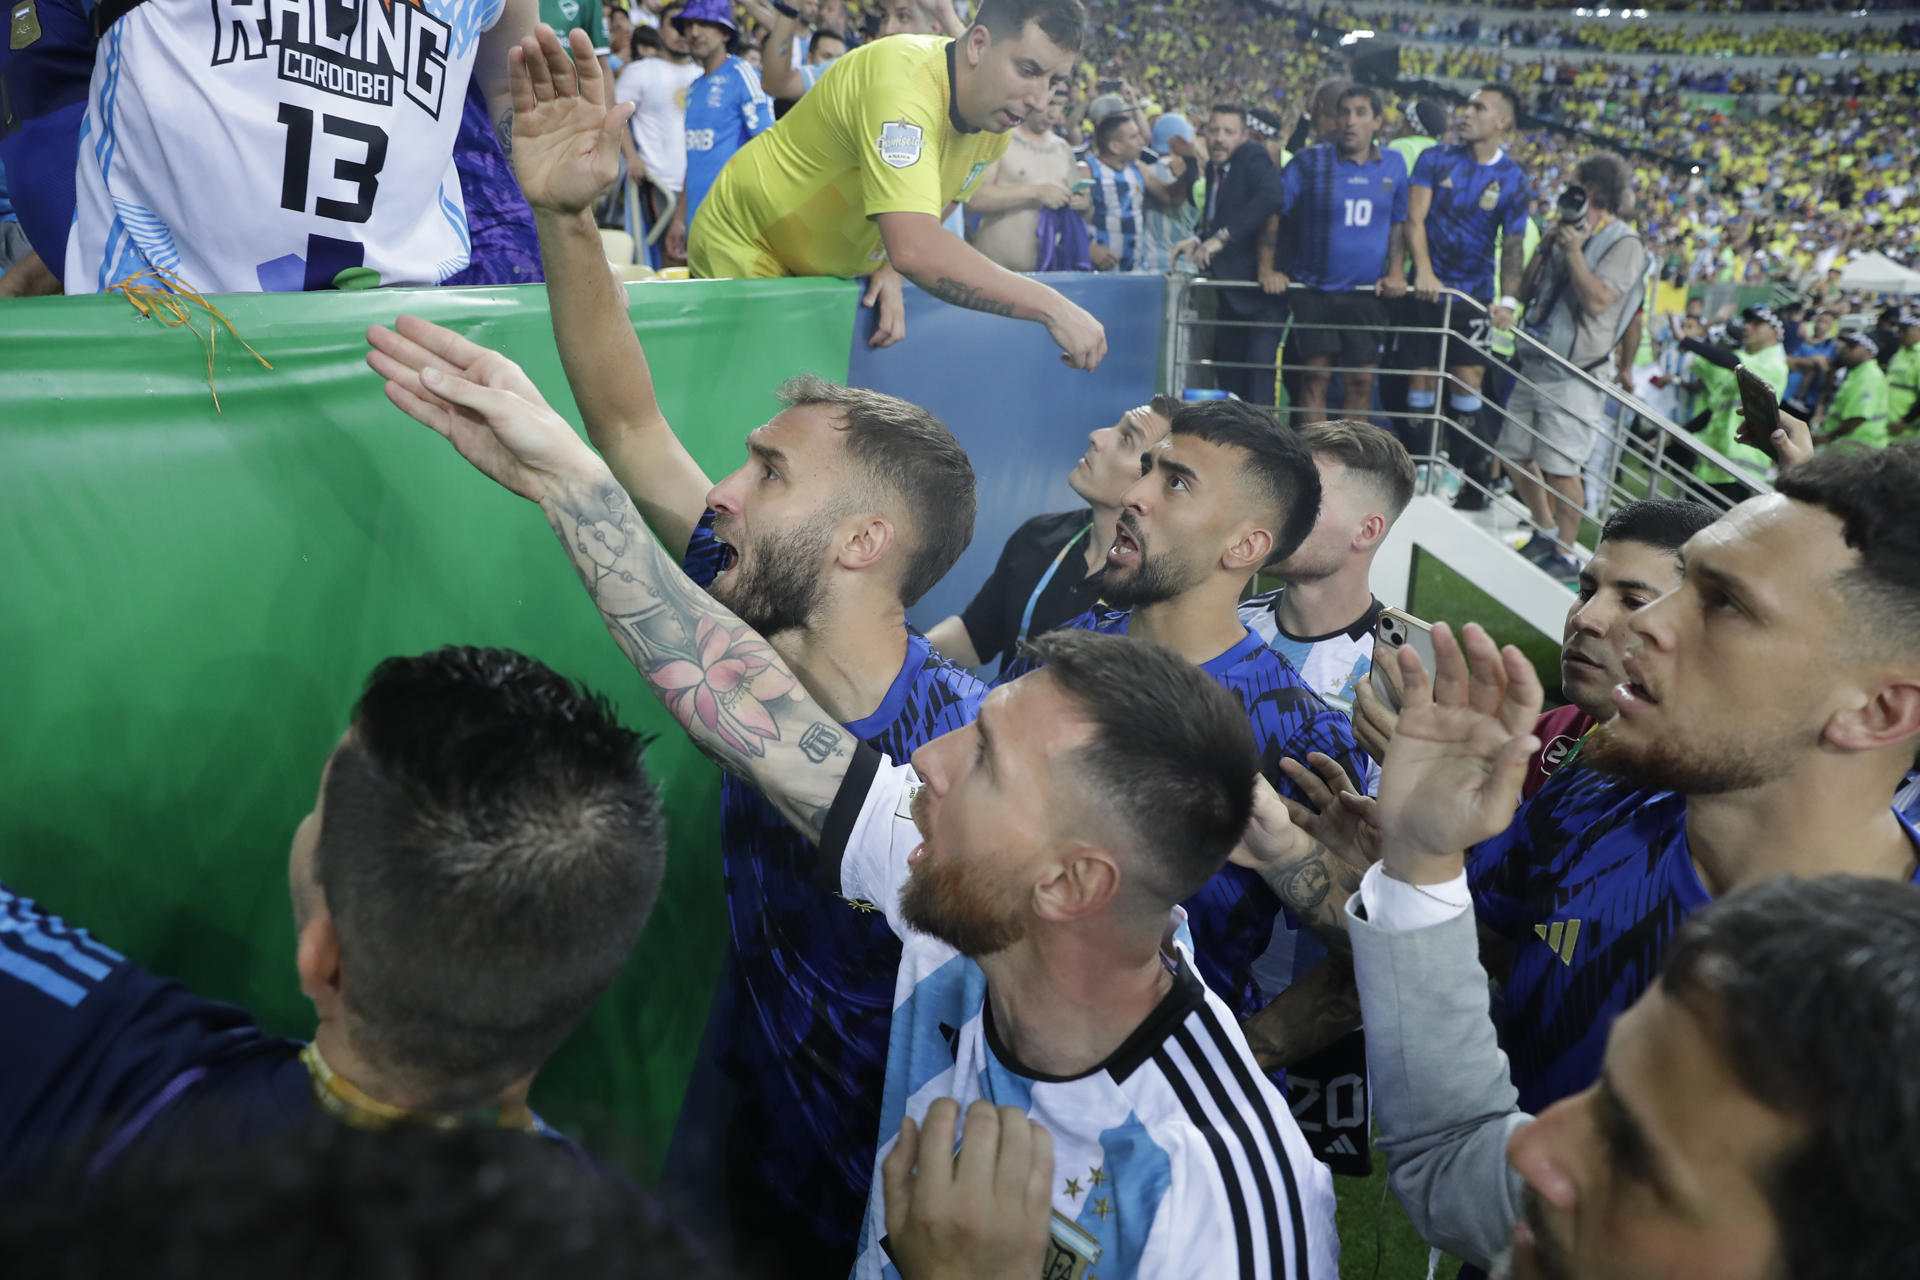 Vergonya a les grades del Maracanà i l'Argentina de Leo Messi ensorra el Brasil